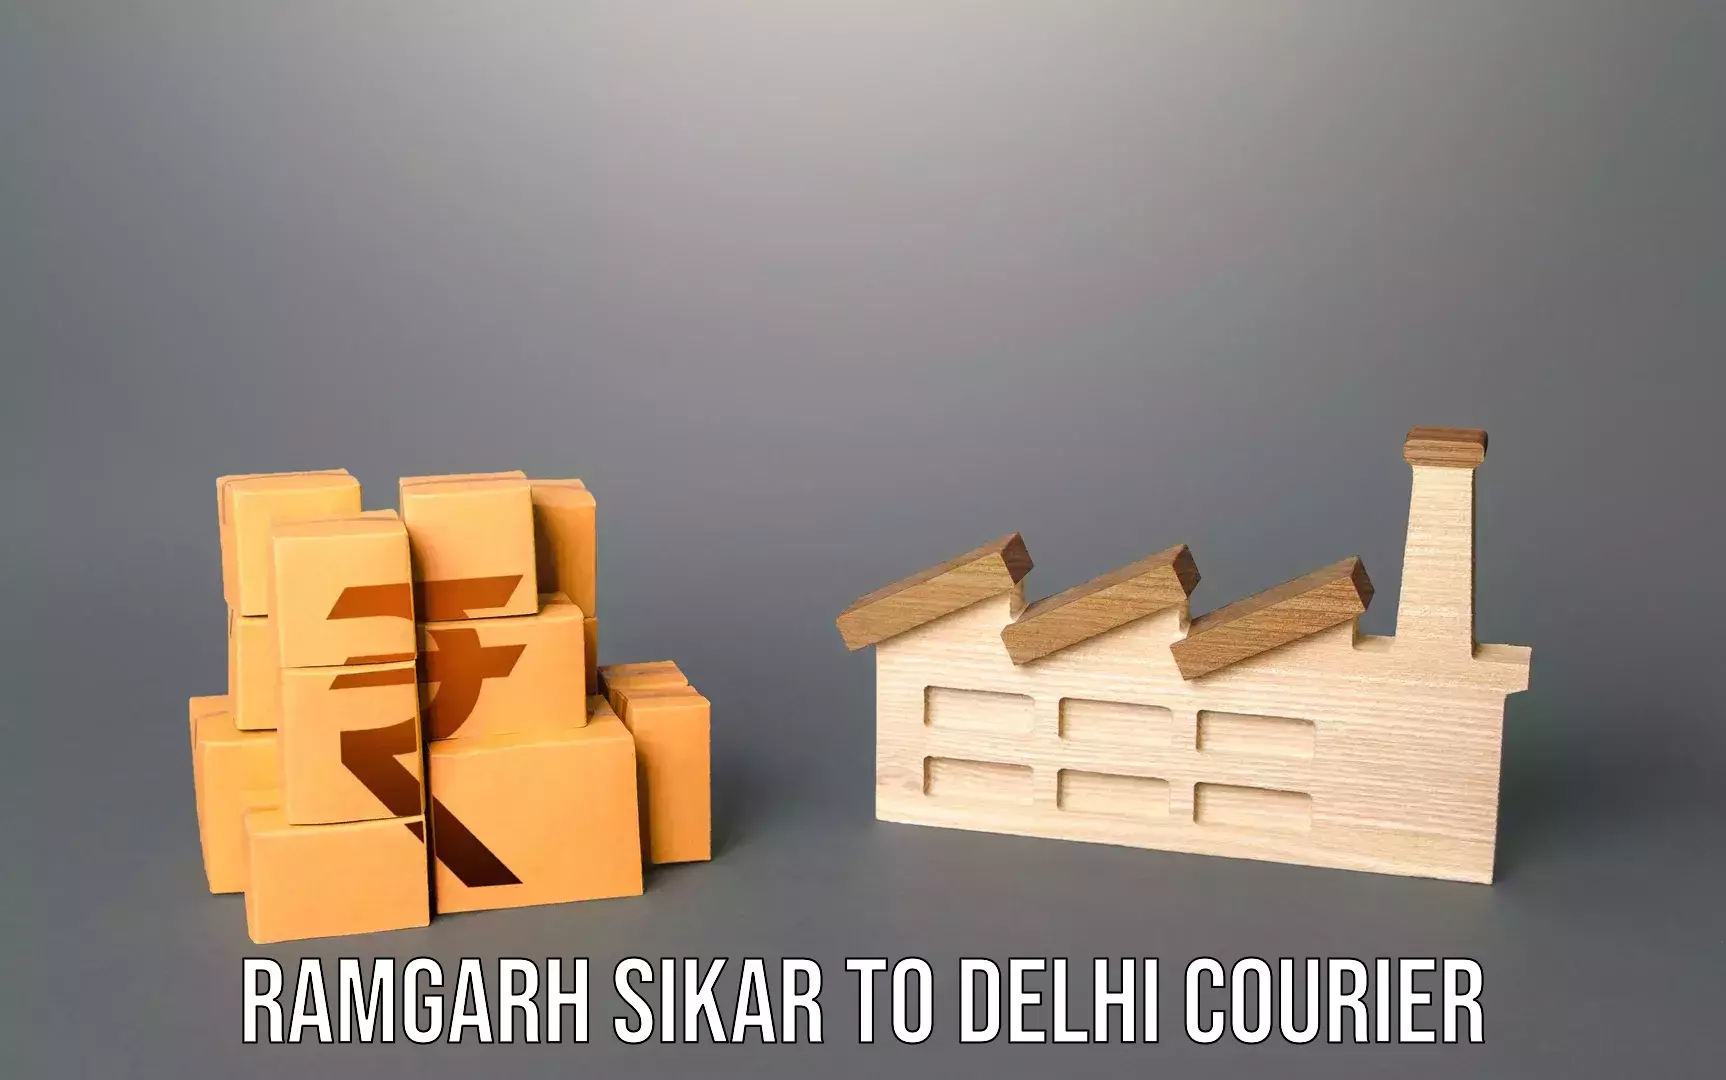 High-quality baggage shipment Ramgarh Sikar to NIT Delhi